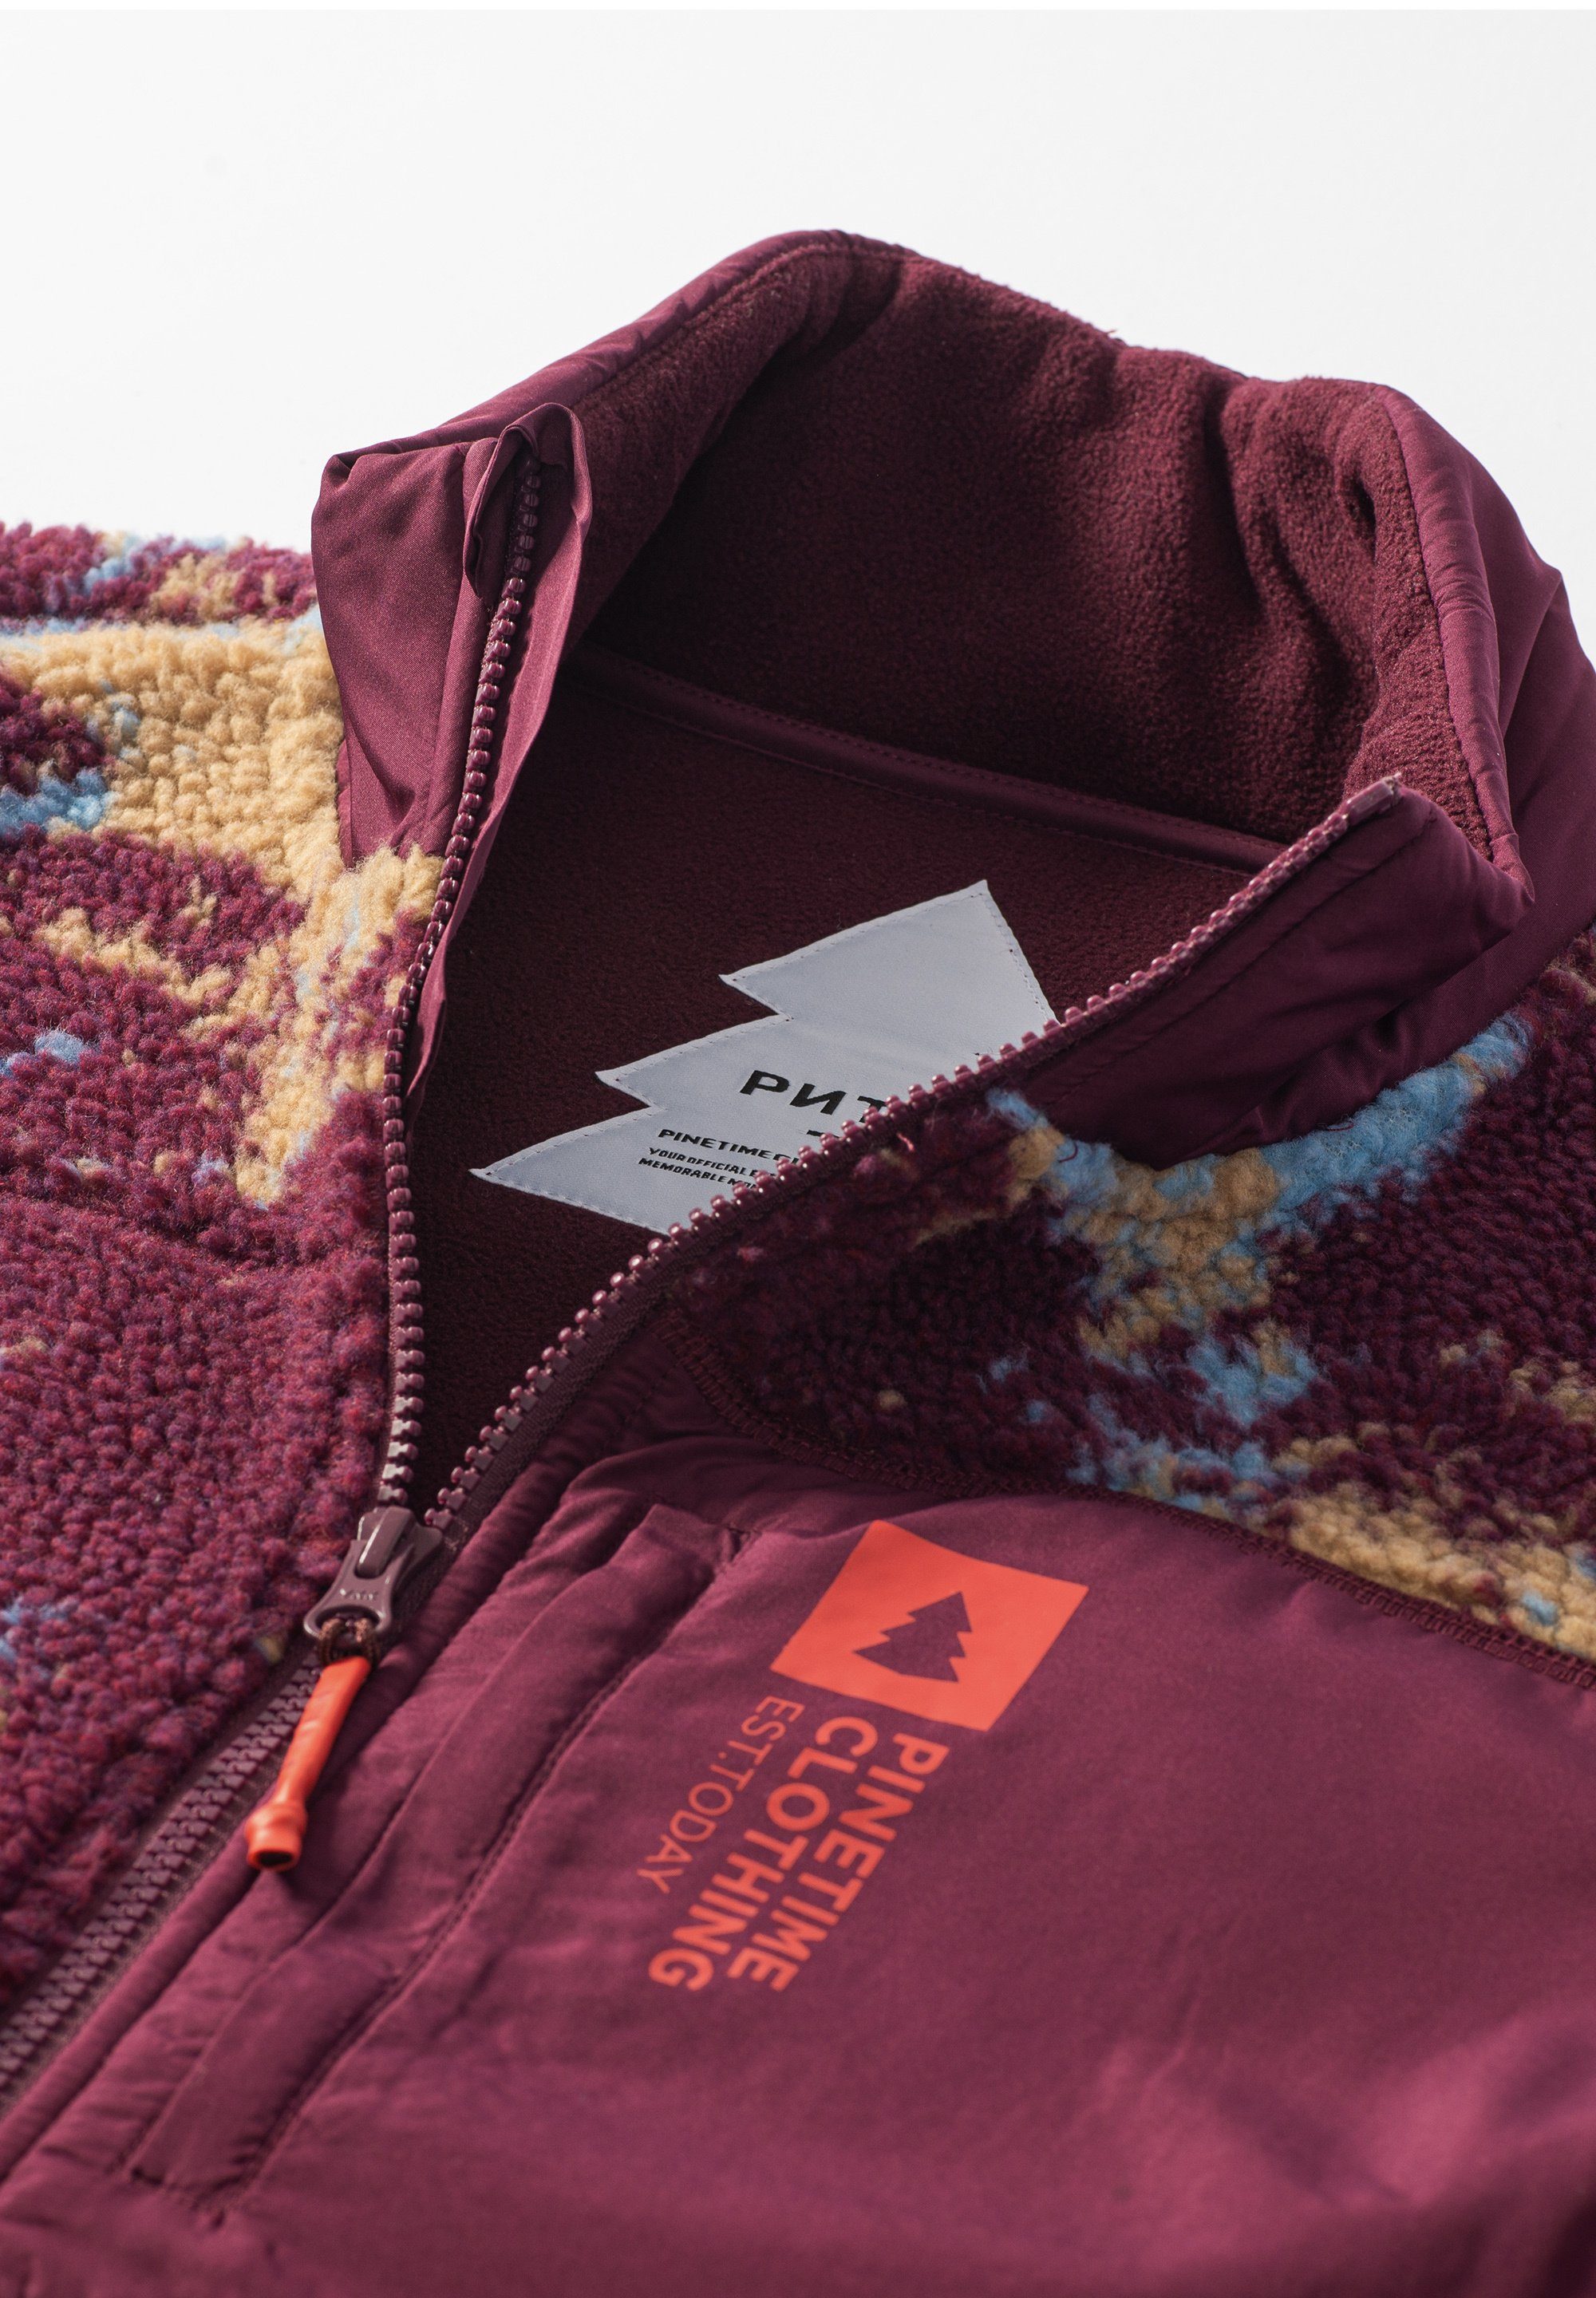 Tage Sherpa-Futter kühle für Pinetime Wärme Vest The bietet Moss außergewöhnliche Funktionsweste Clothing ruby